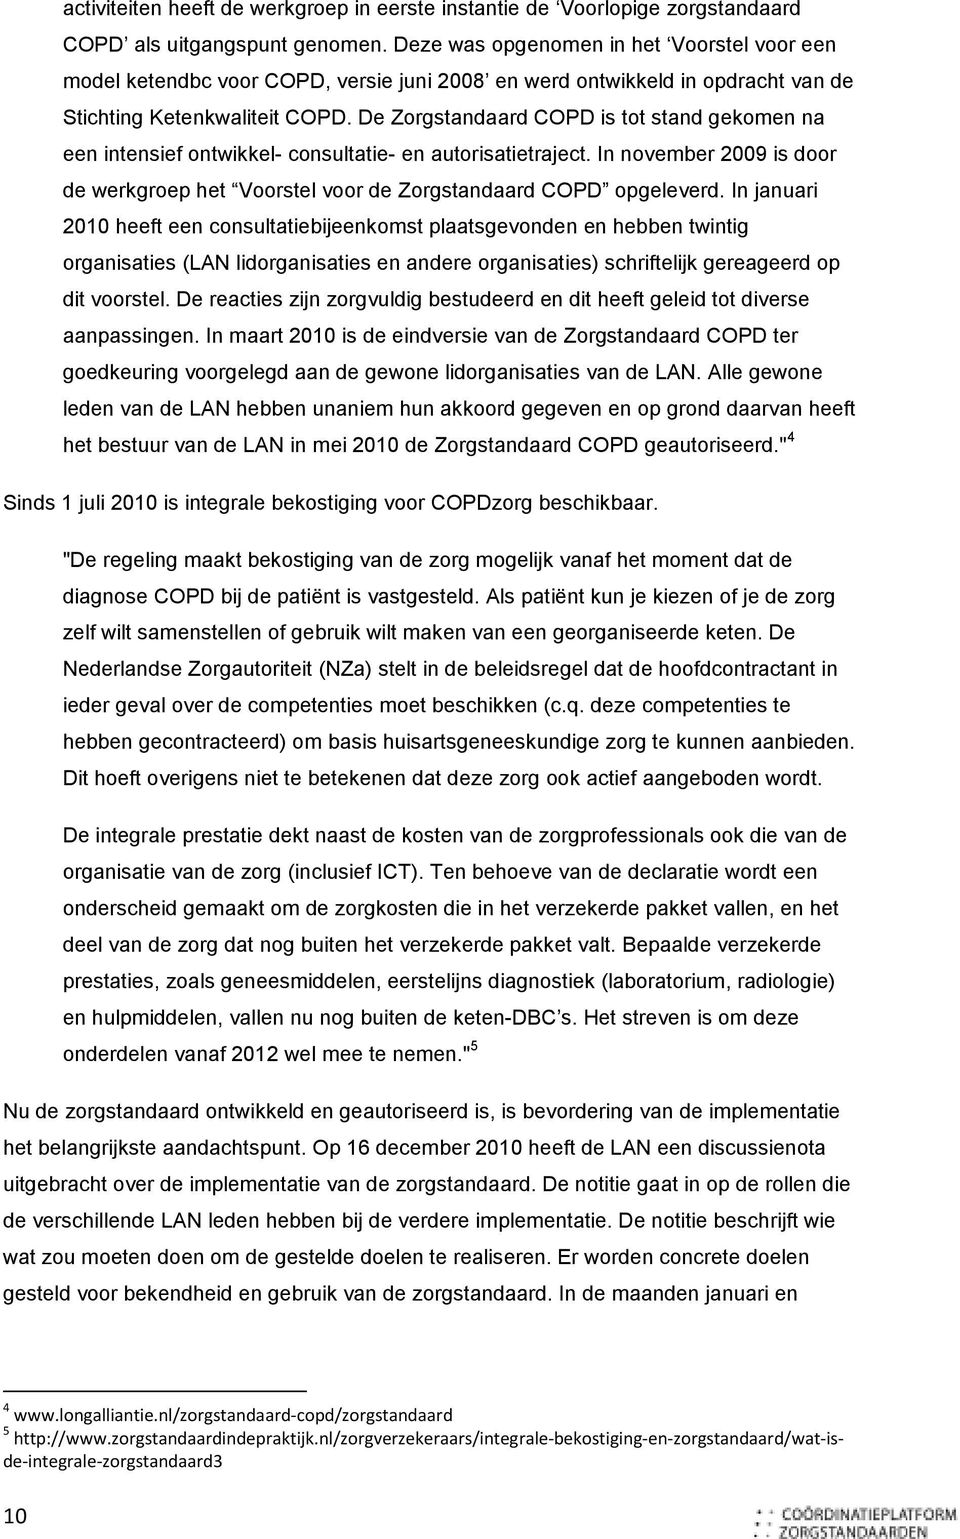 De Zorgstandaard COPD is tot stand gekomen na een intensief ontwikkel- consultatie- en autorisatietraject. In november 2009 is door de werkgroep het Voorstel voor de Zorgstandaard COPD opgeleverd.